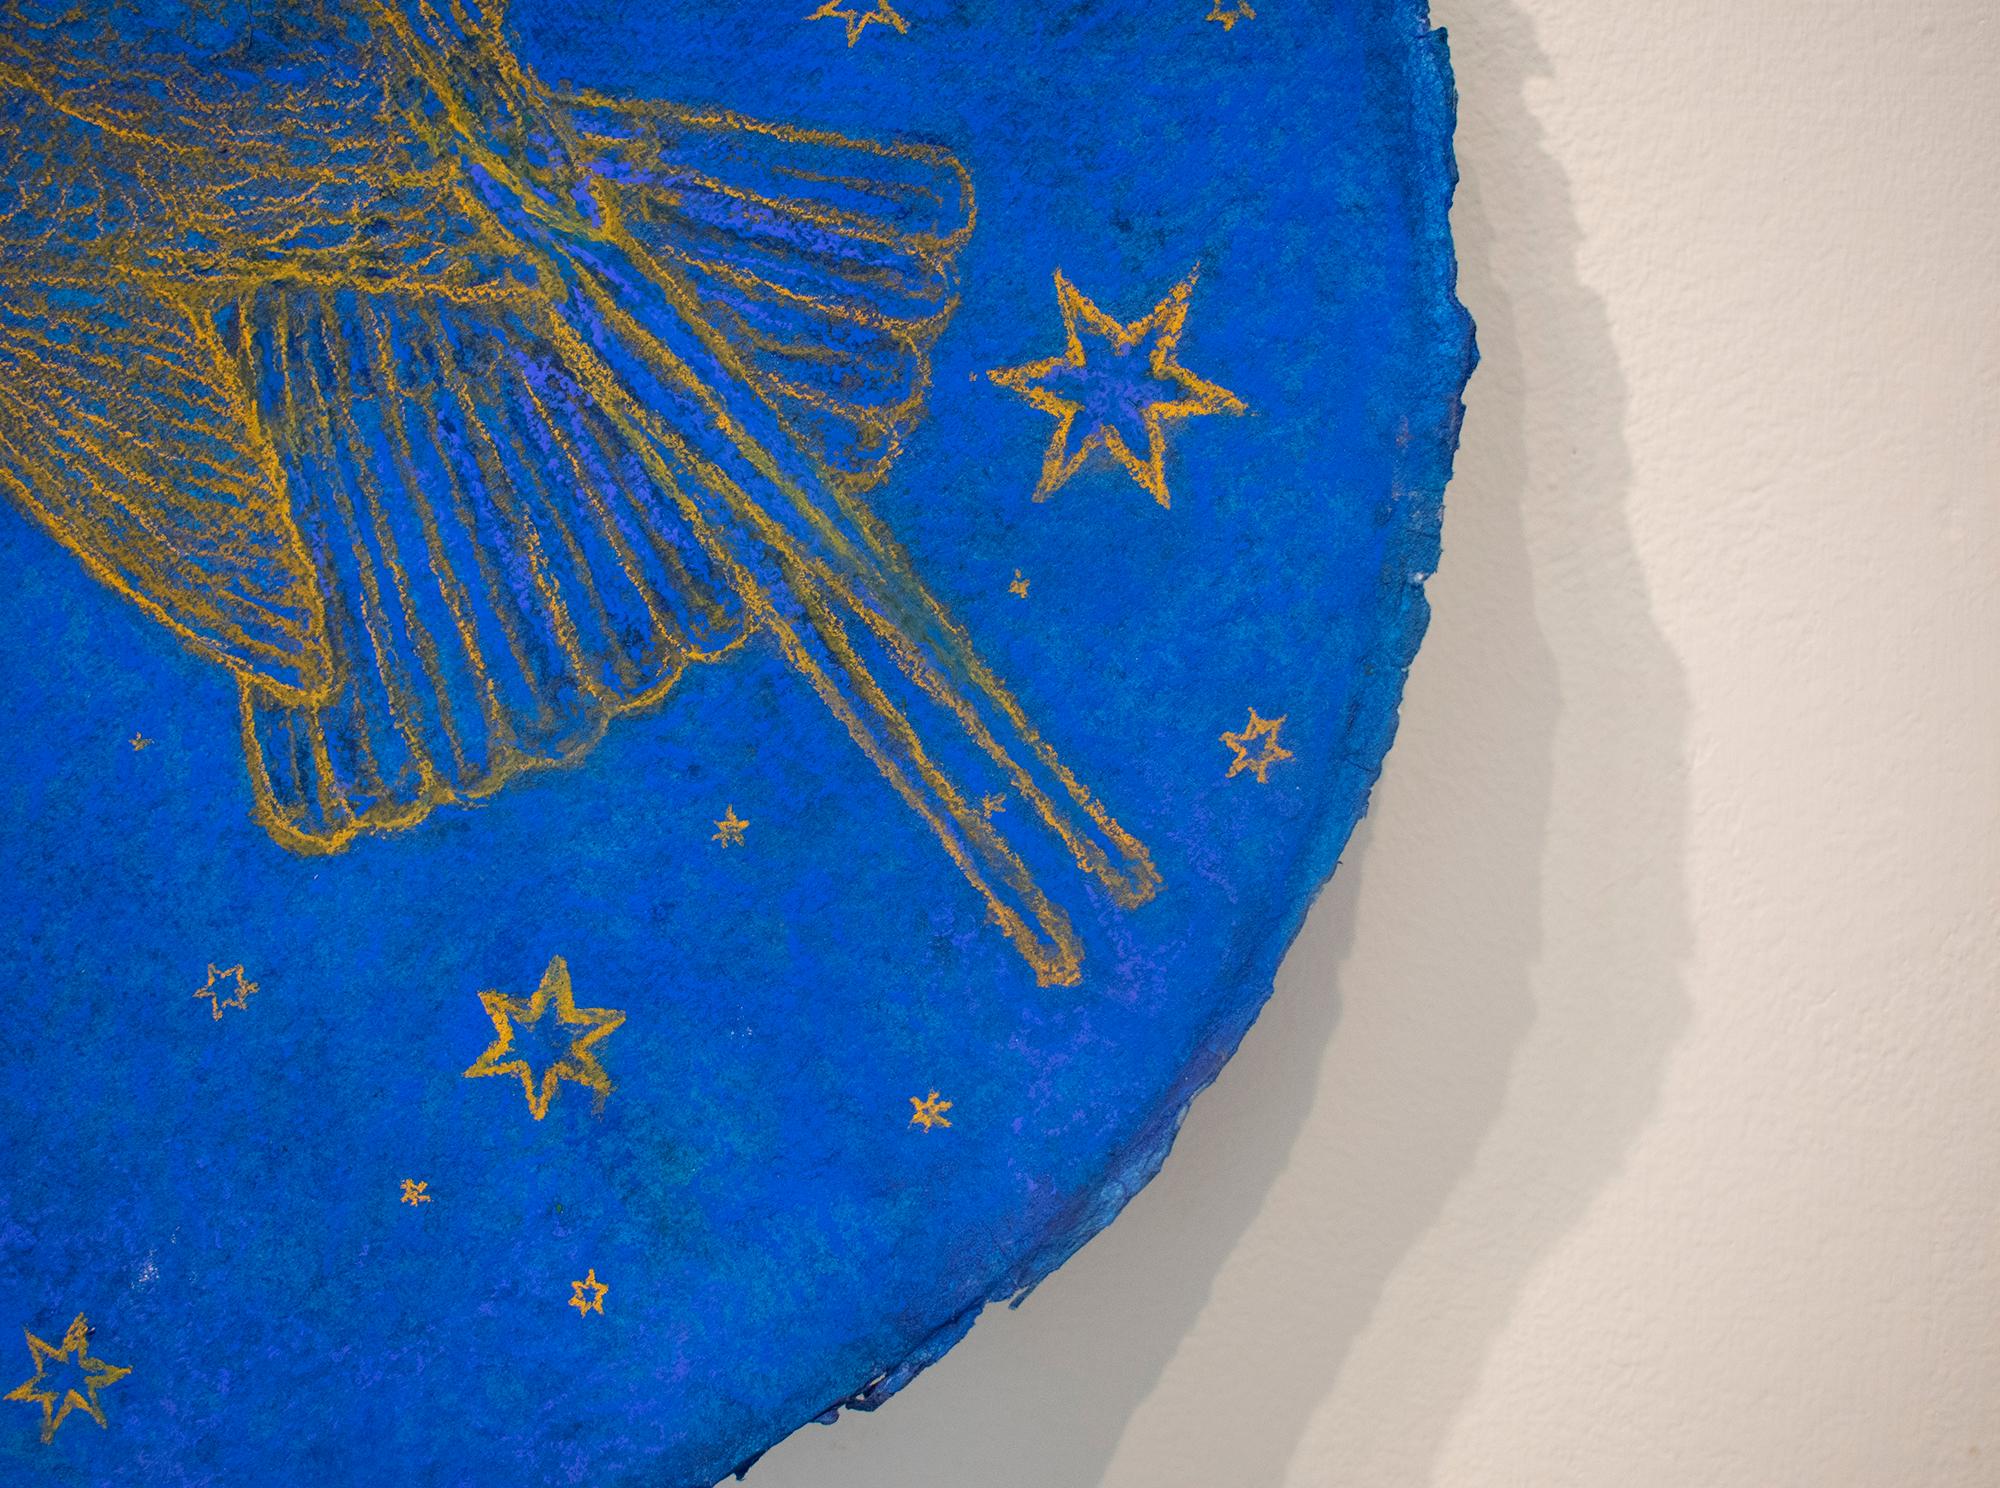 Hummingbird Augury: Kobaltblaue pastellfarbene Zeichnung auf handgeschöpftem Papier mit goldenen Sternen (Zeitgenössisch), Painting, von Nicholas Kahn & Richard Selesnick